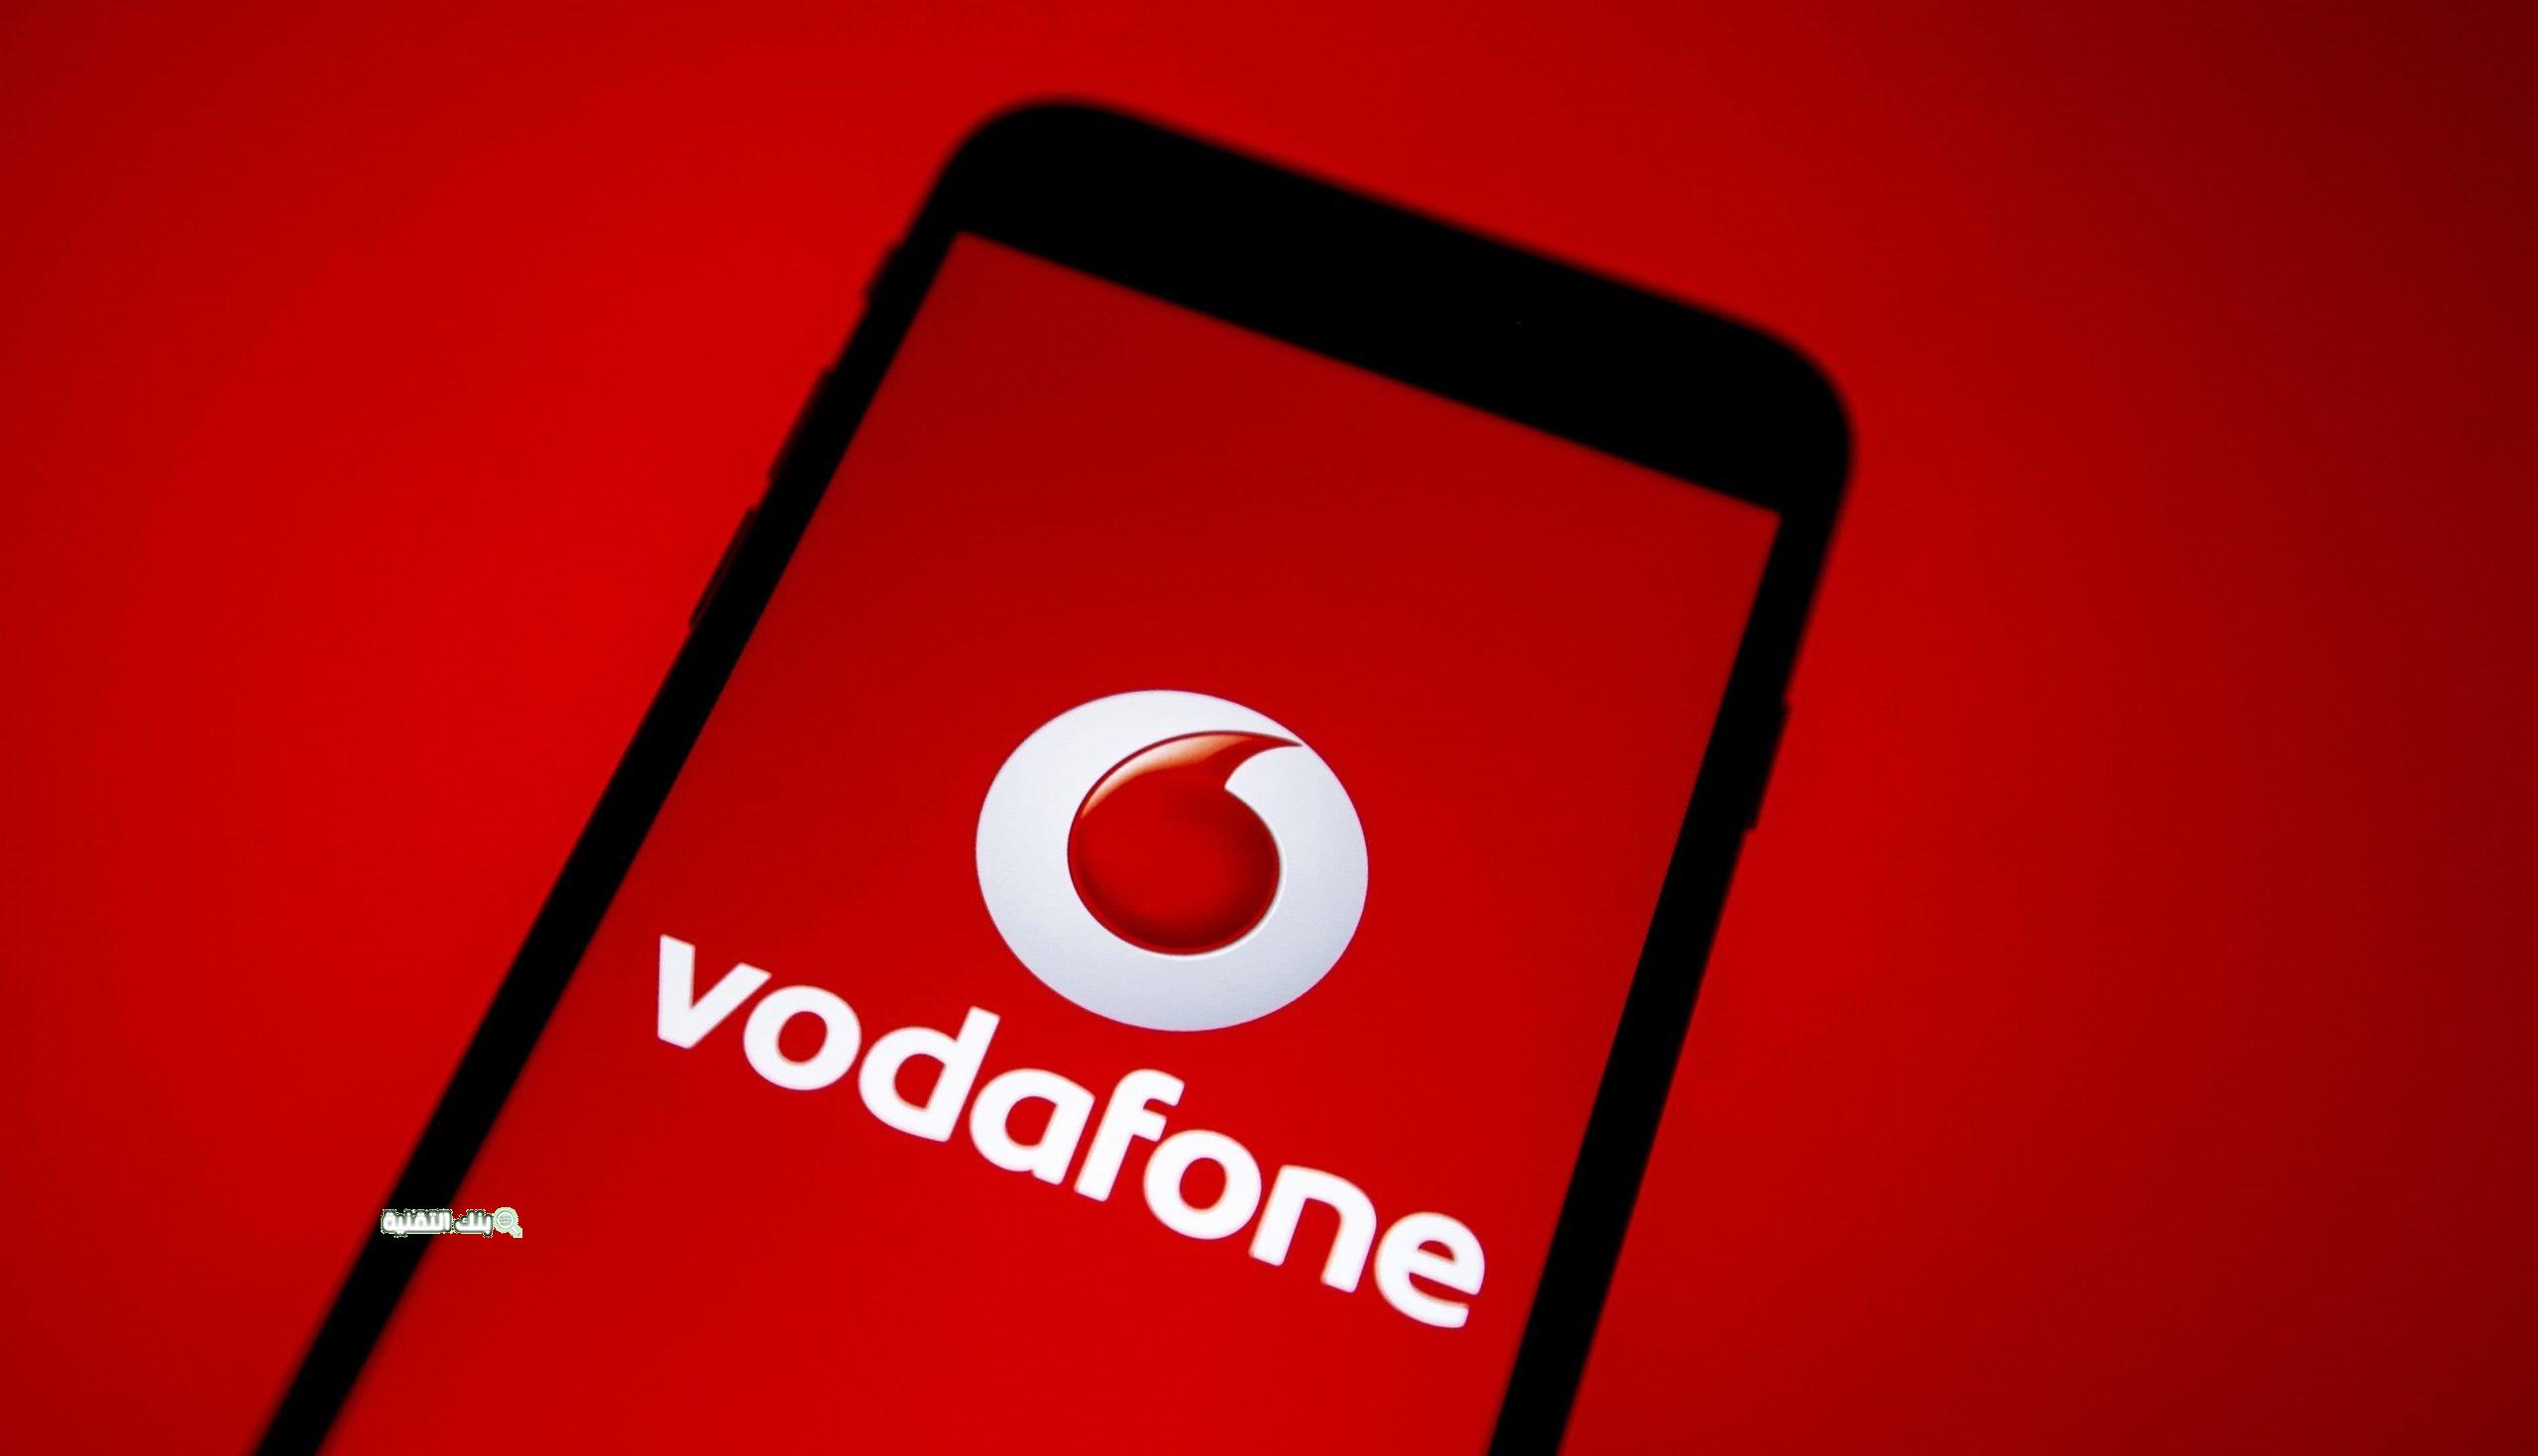 تعرف على أرقام خدمة عملاء فودافون Vodafone وأفضل العروض